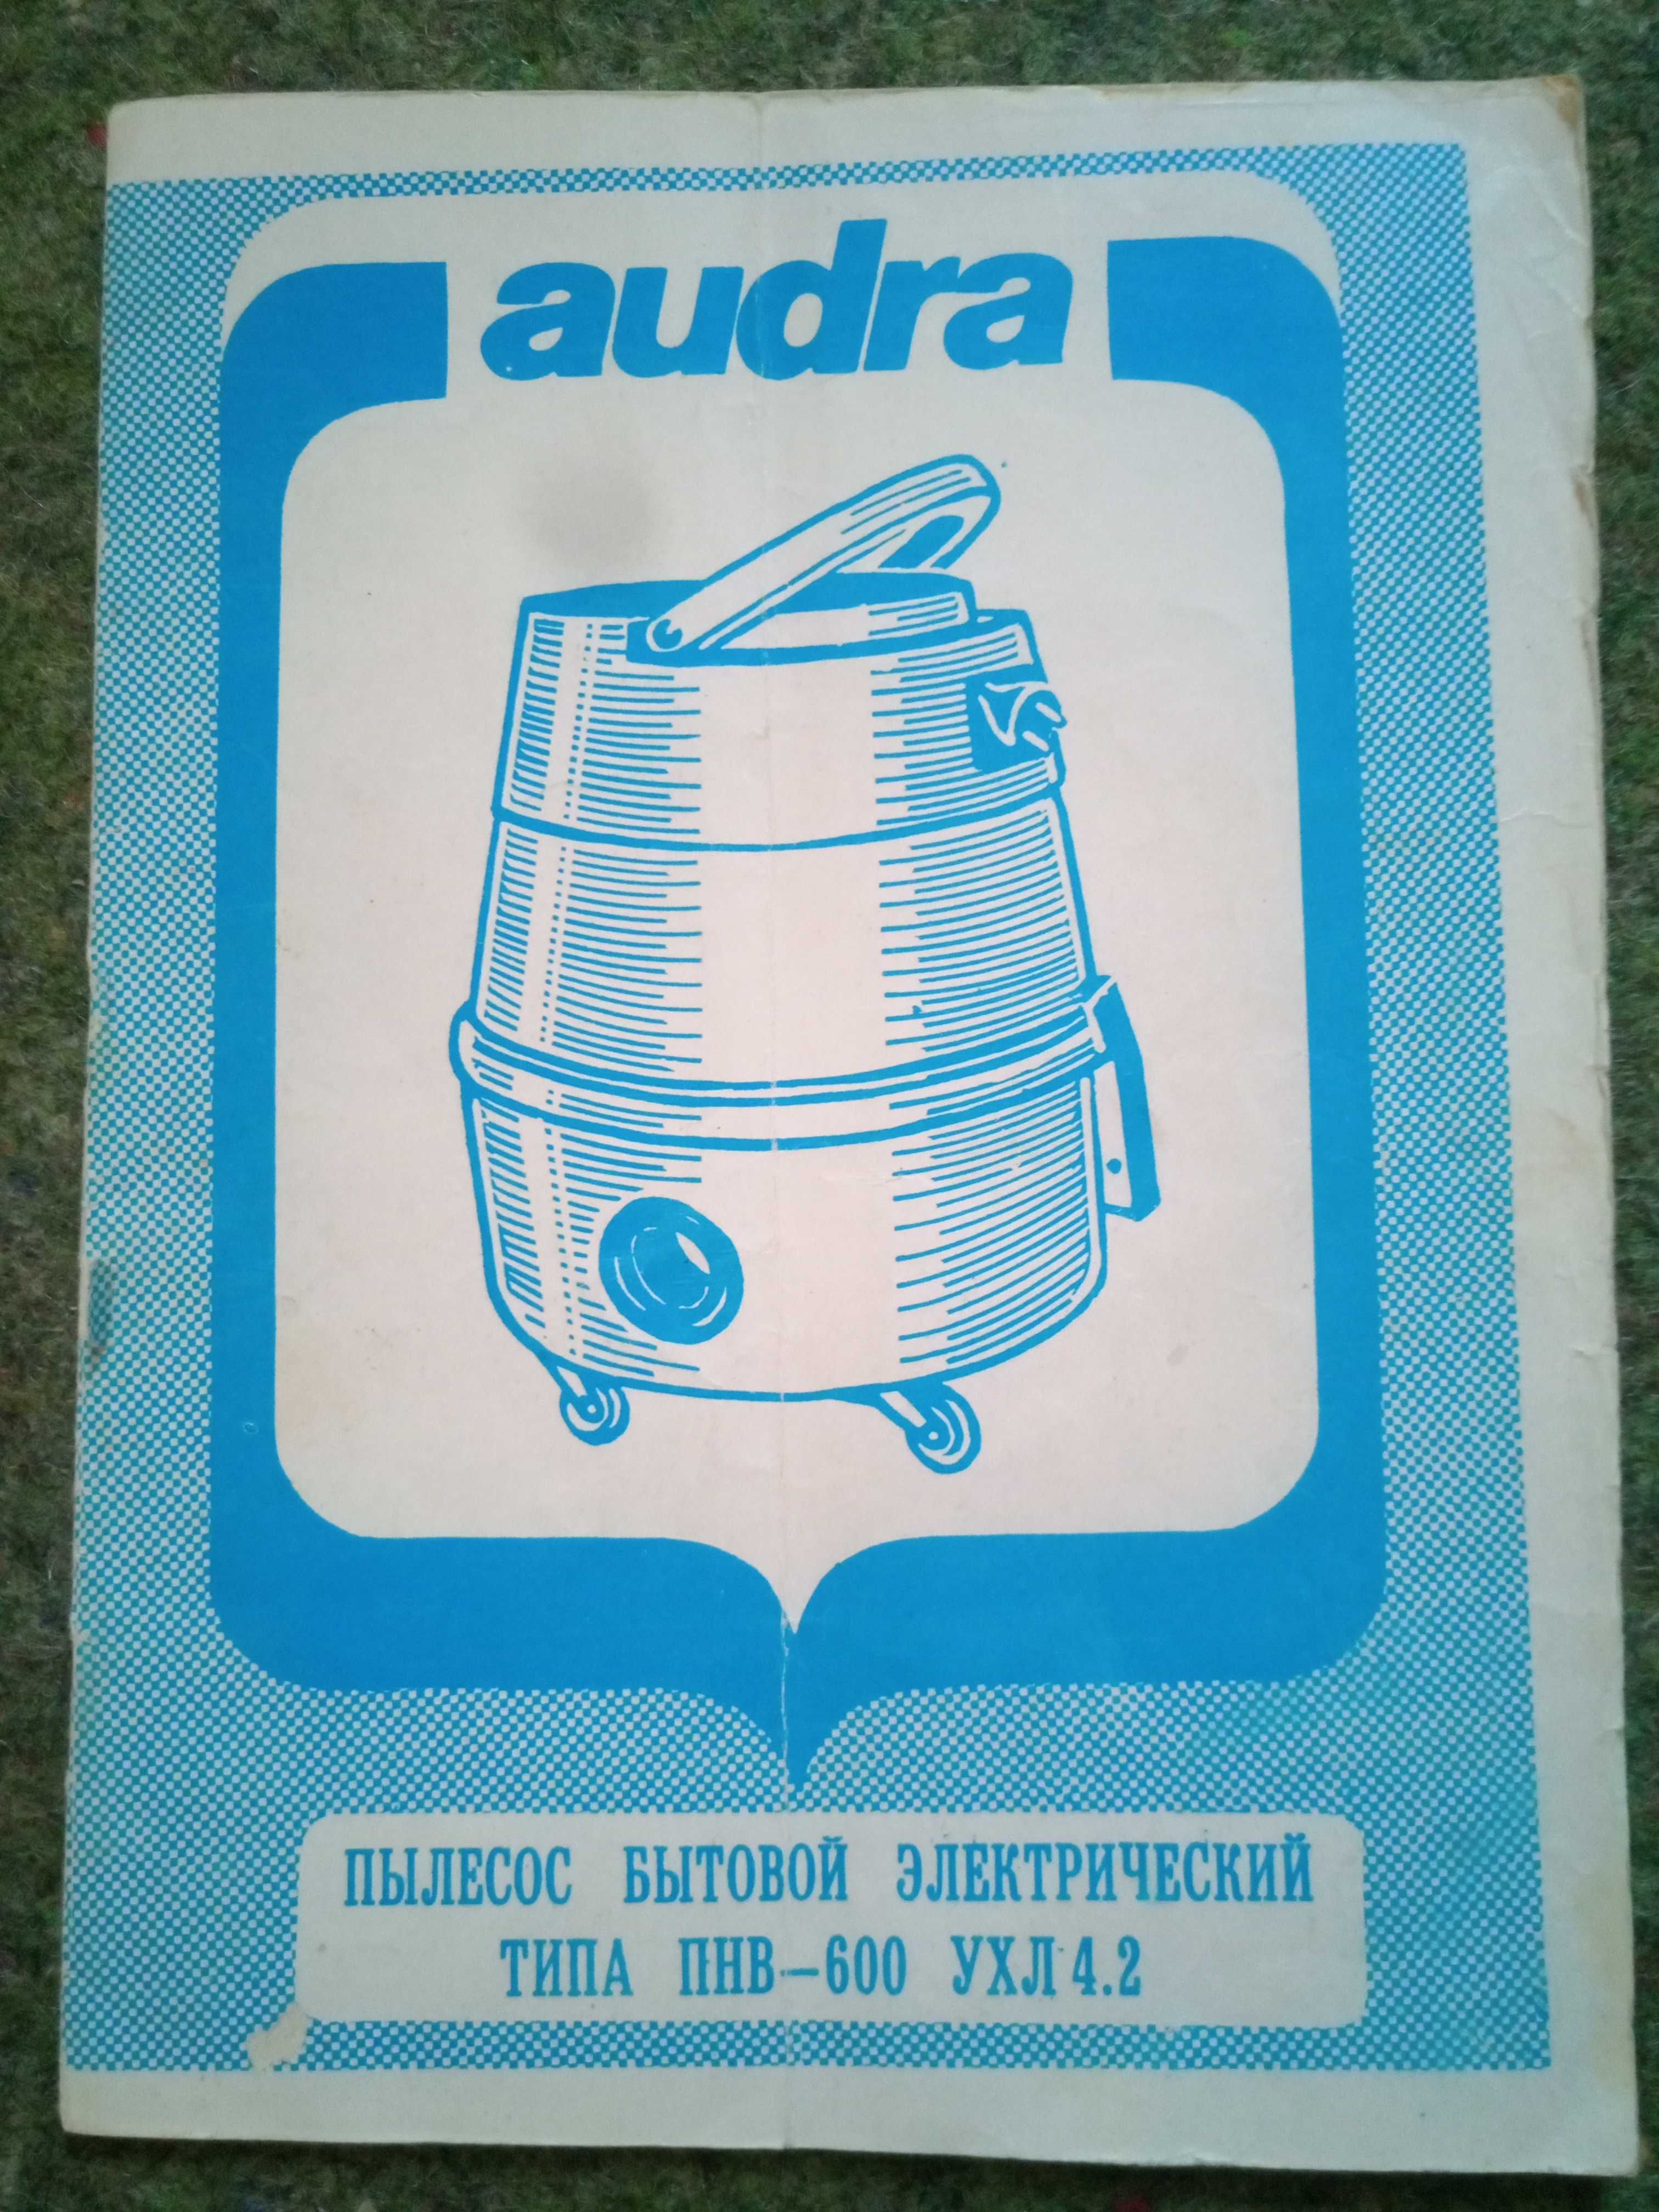 Audra, Ракета 9А, руководства по эксплуатации к пылесосам